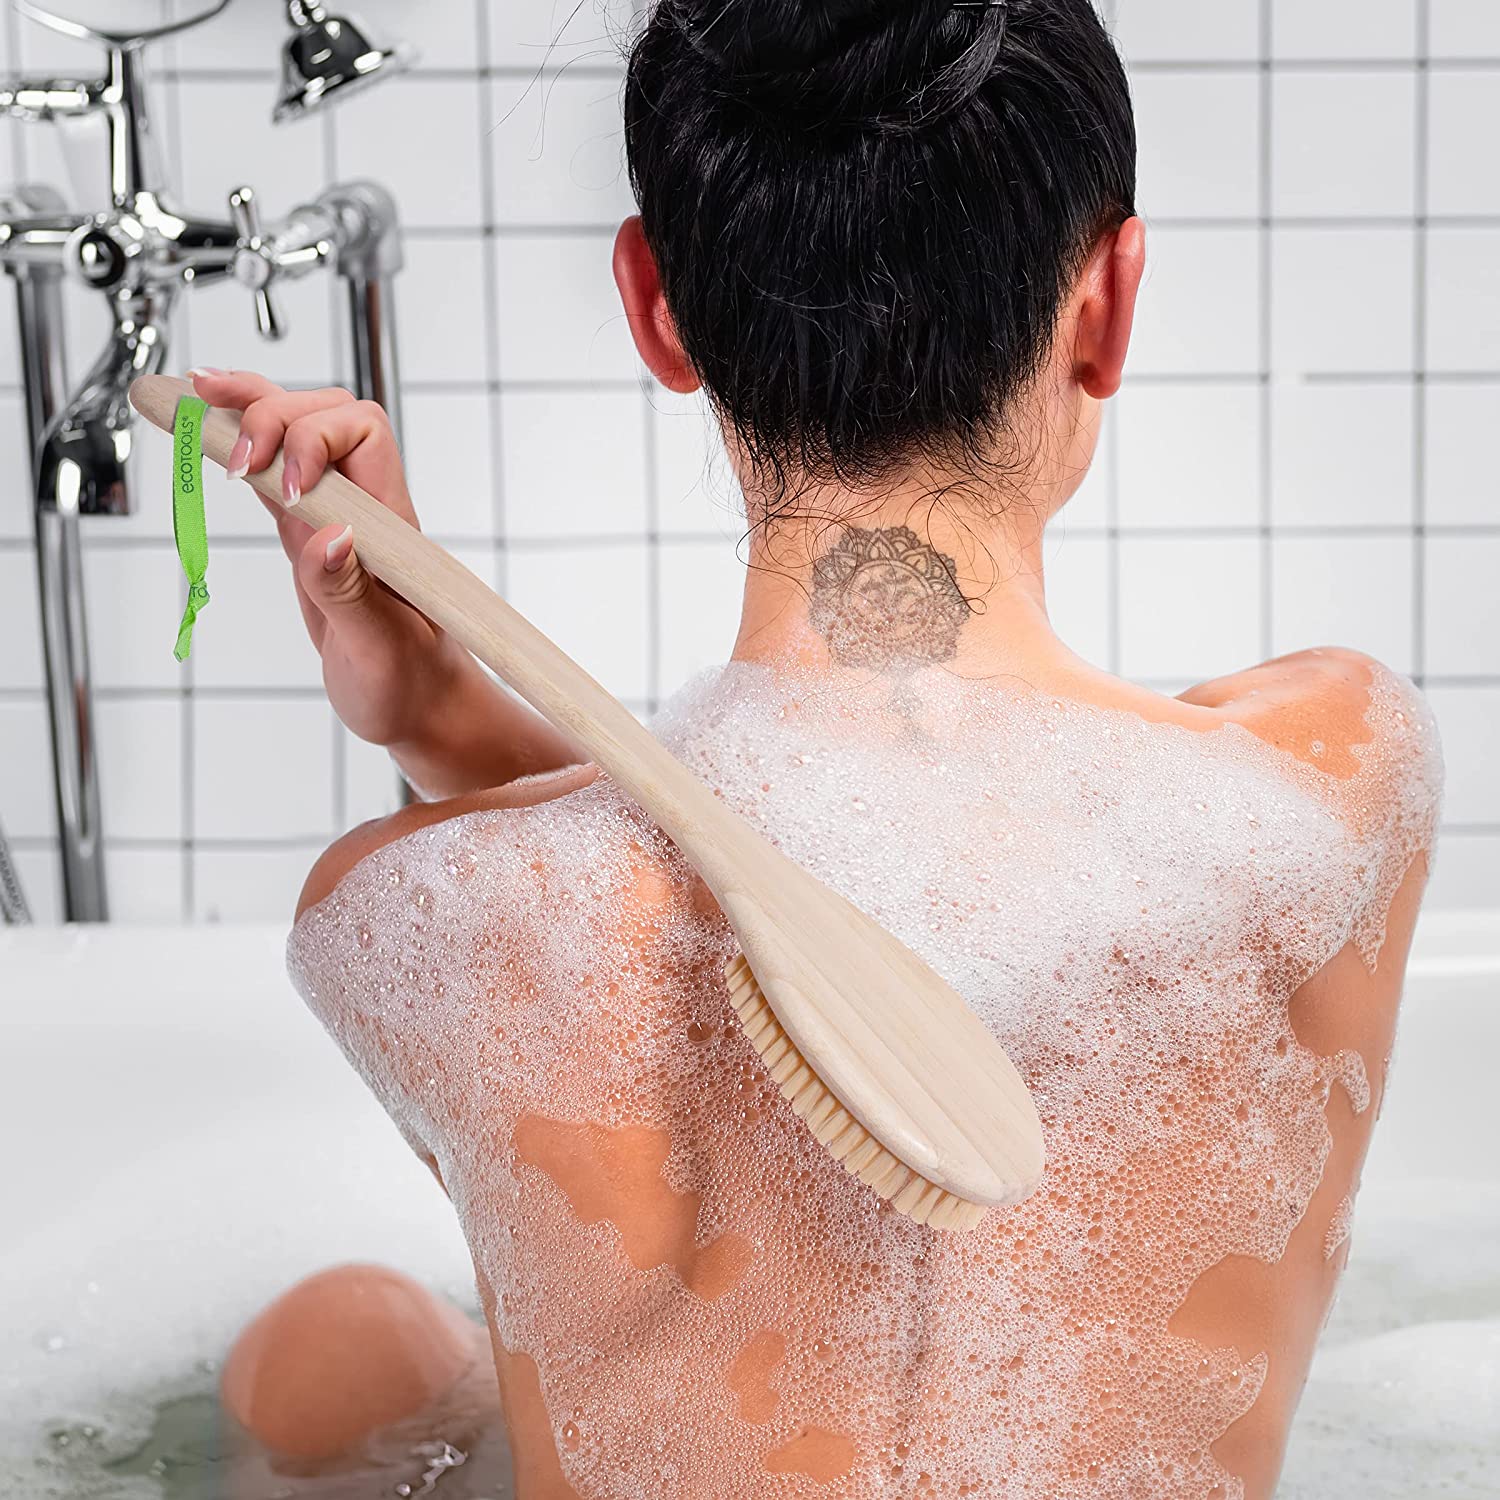 Best Back Scrubber For Shower – February 2023